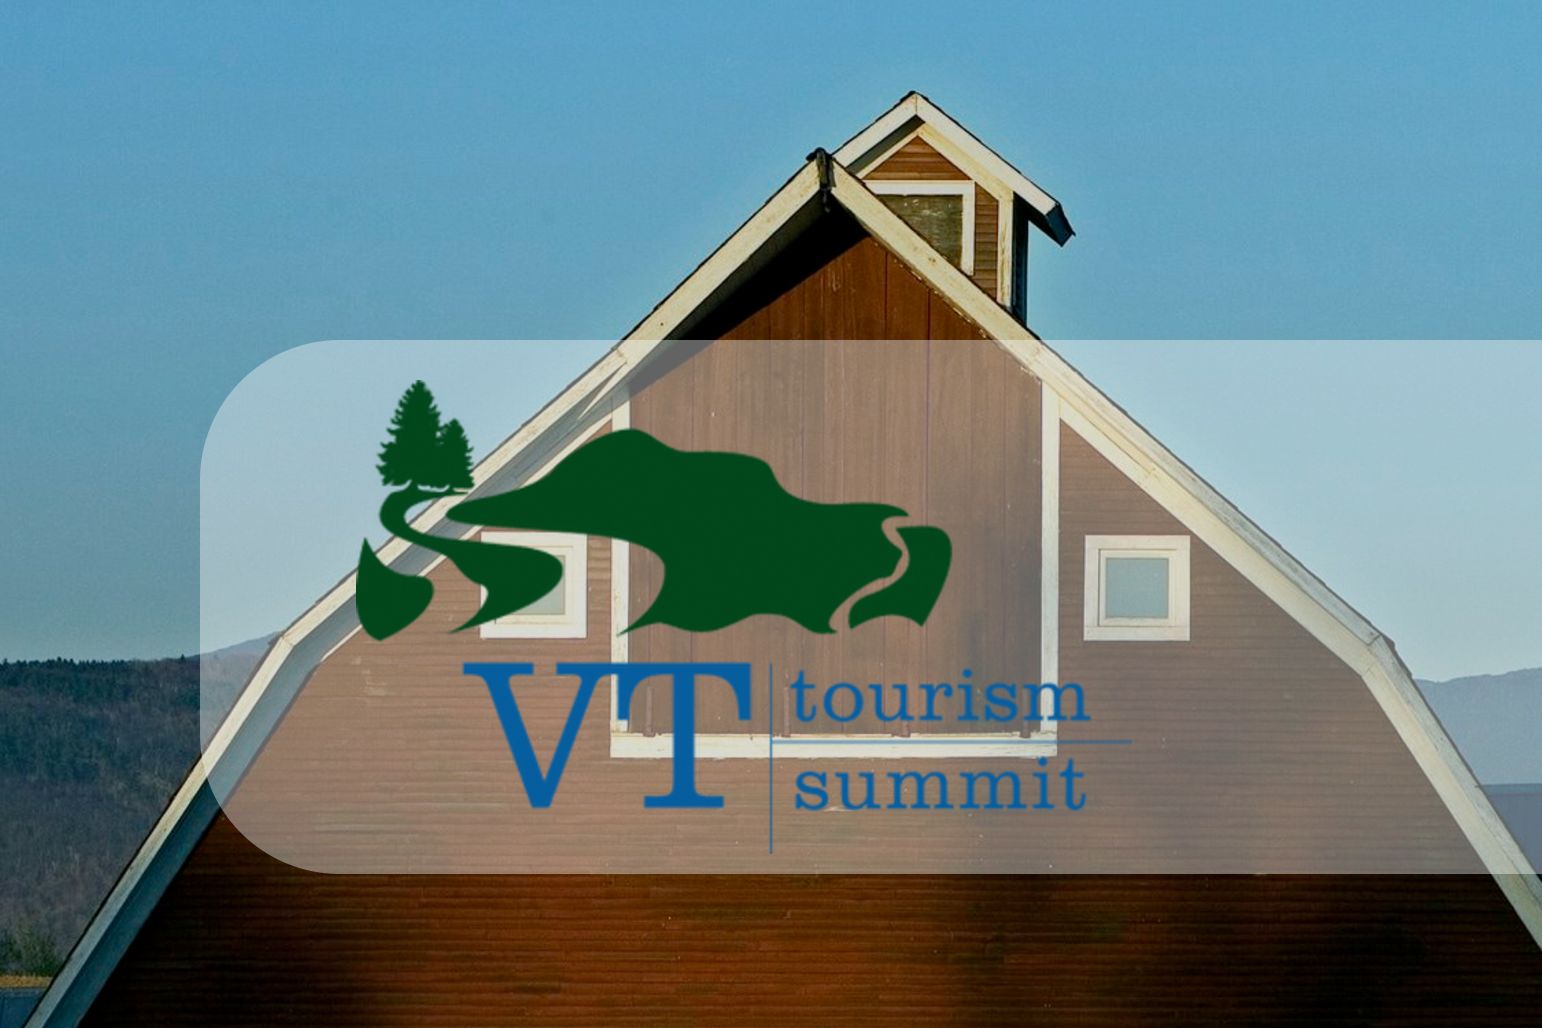 Vermont Tourism Summit Presentation